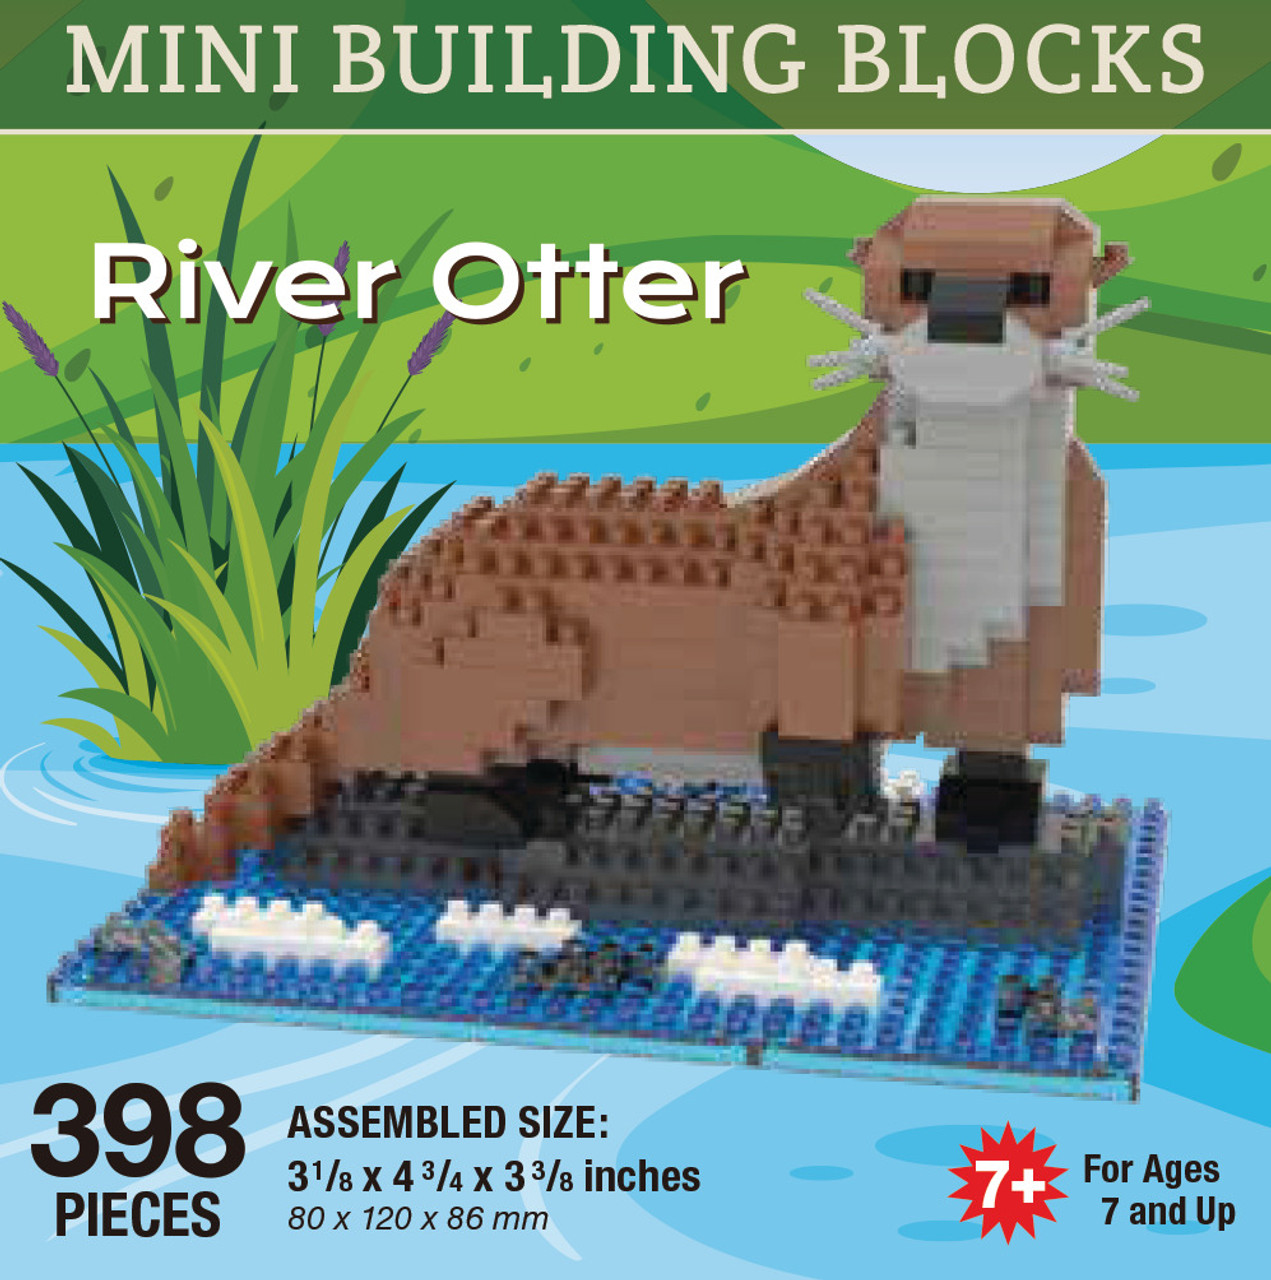 Mini Building Blocks River Otter